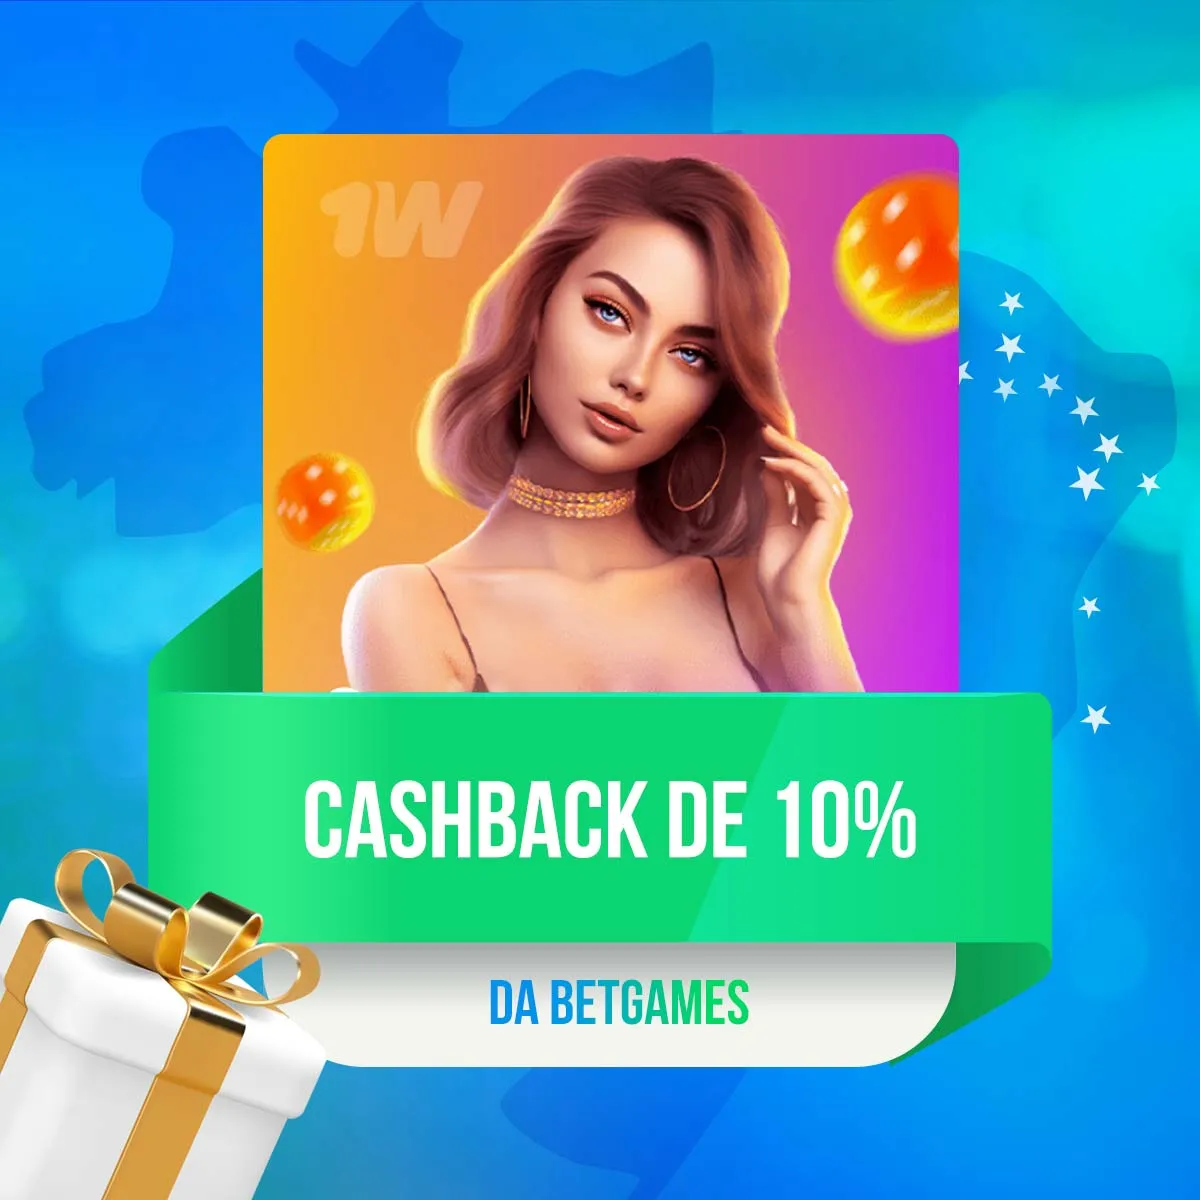 Cashback de 10% da BetGames no aplicativo de apostas 1win no Brasil